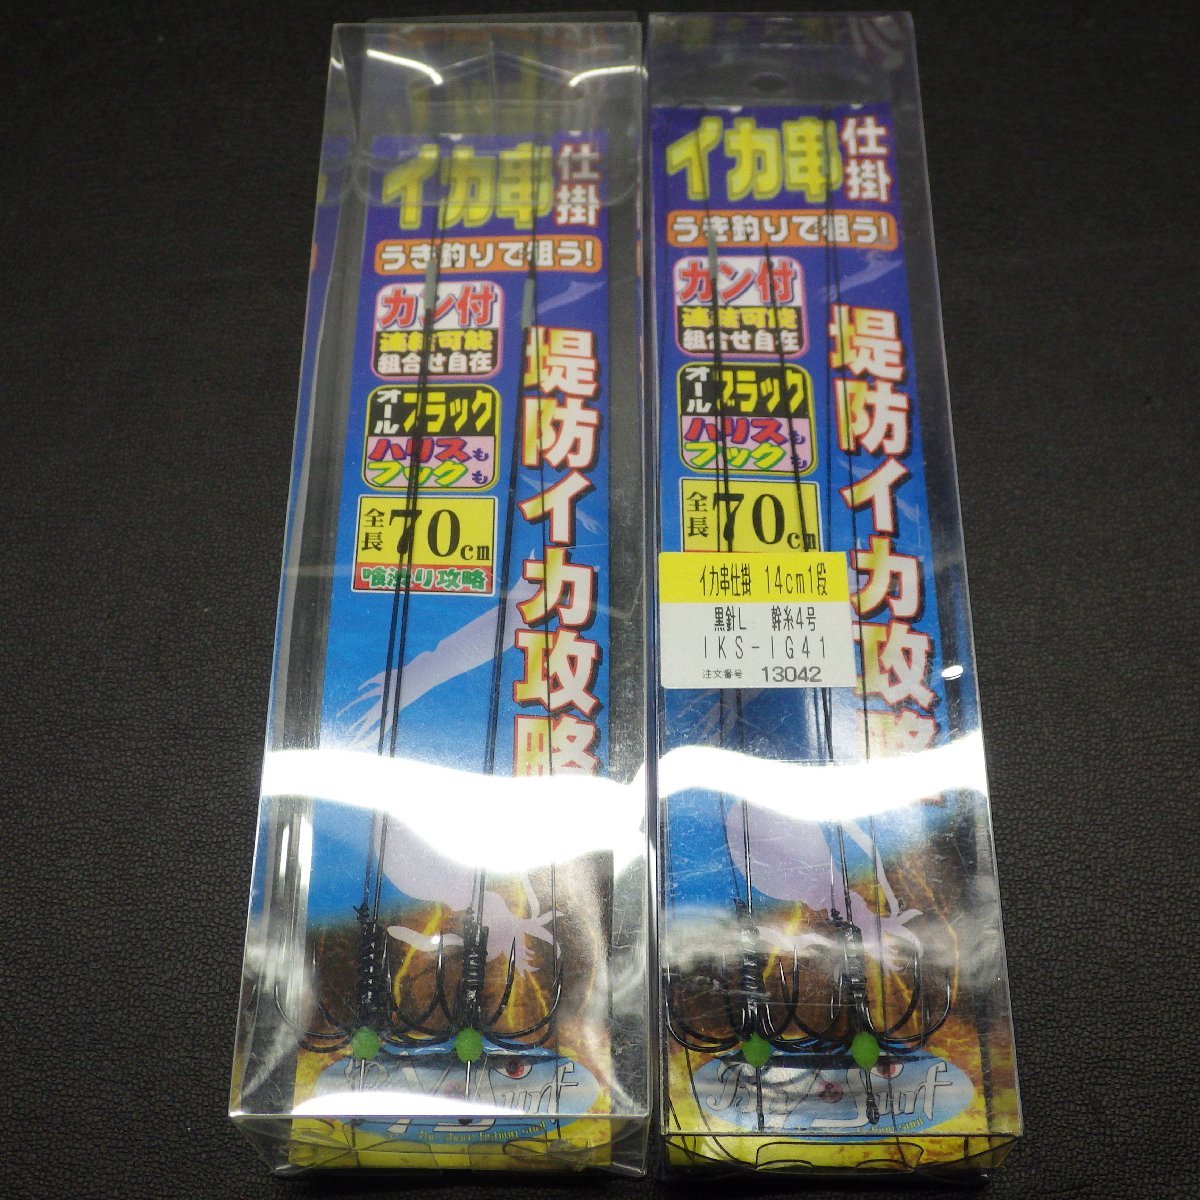 Misaki イカ串仕掛 堤防イカ攻略 カン付 14cm1段 合計2枚セット ※在庫品 ※在庫品 (10k0407) 